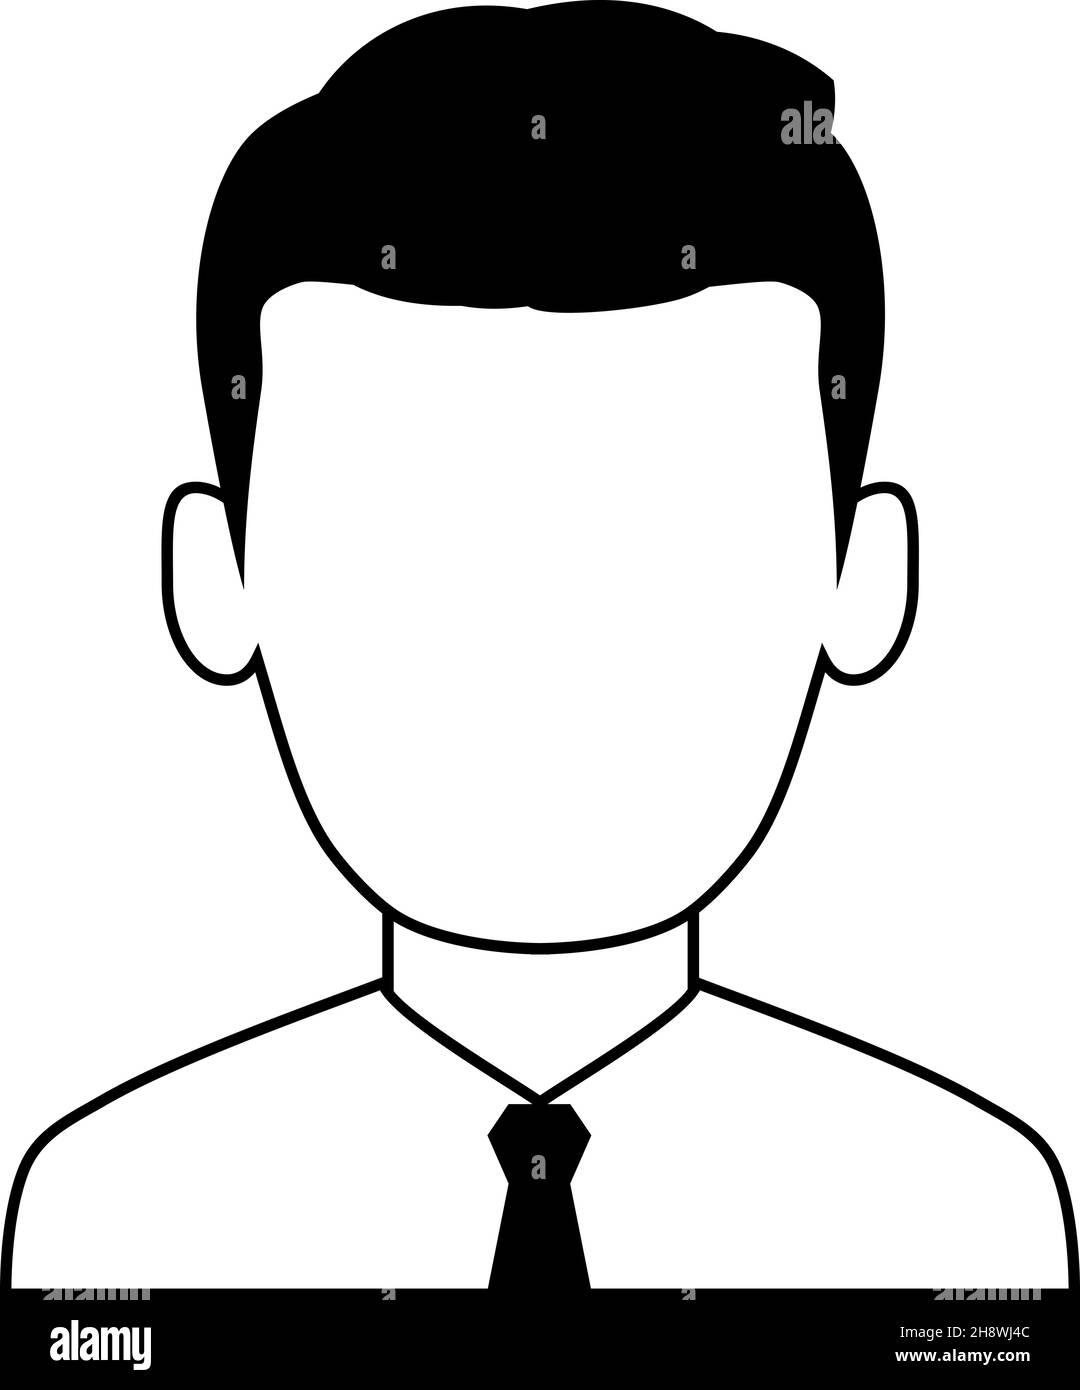 Business Avatar Mann in schwarz-weiß Farbpalette. Stock Vektor